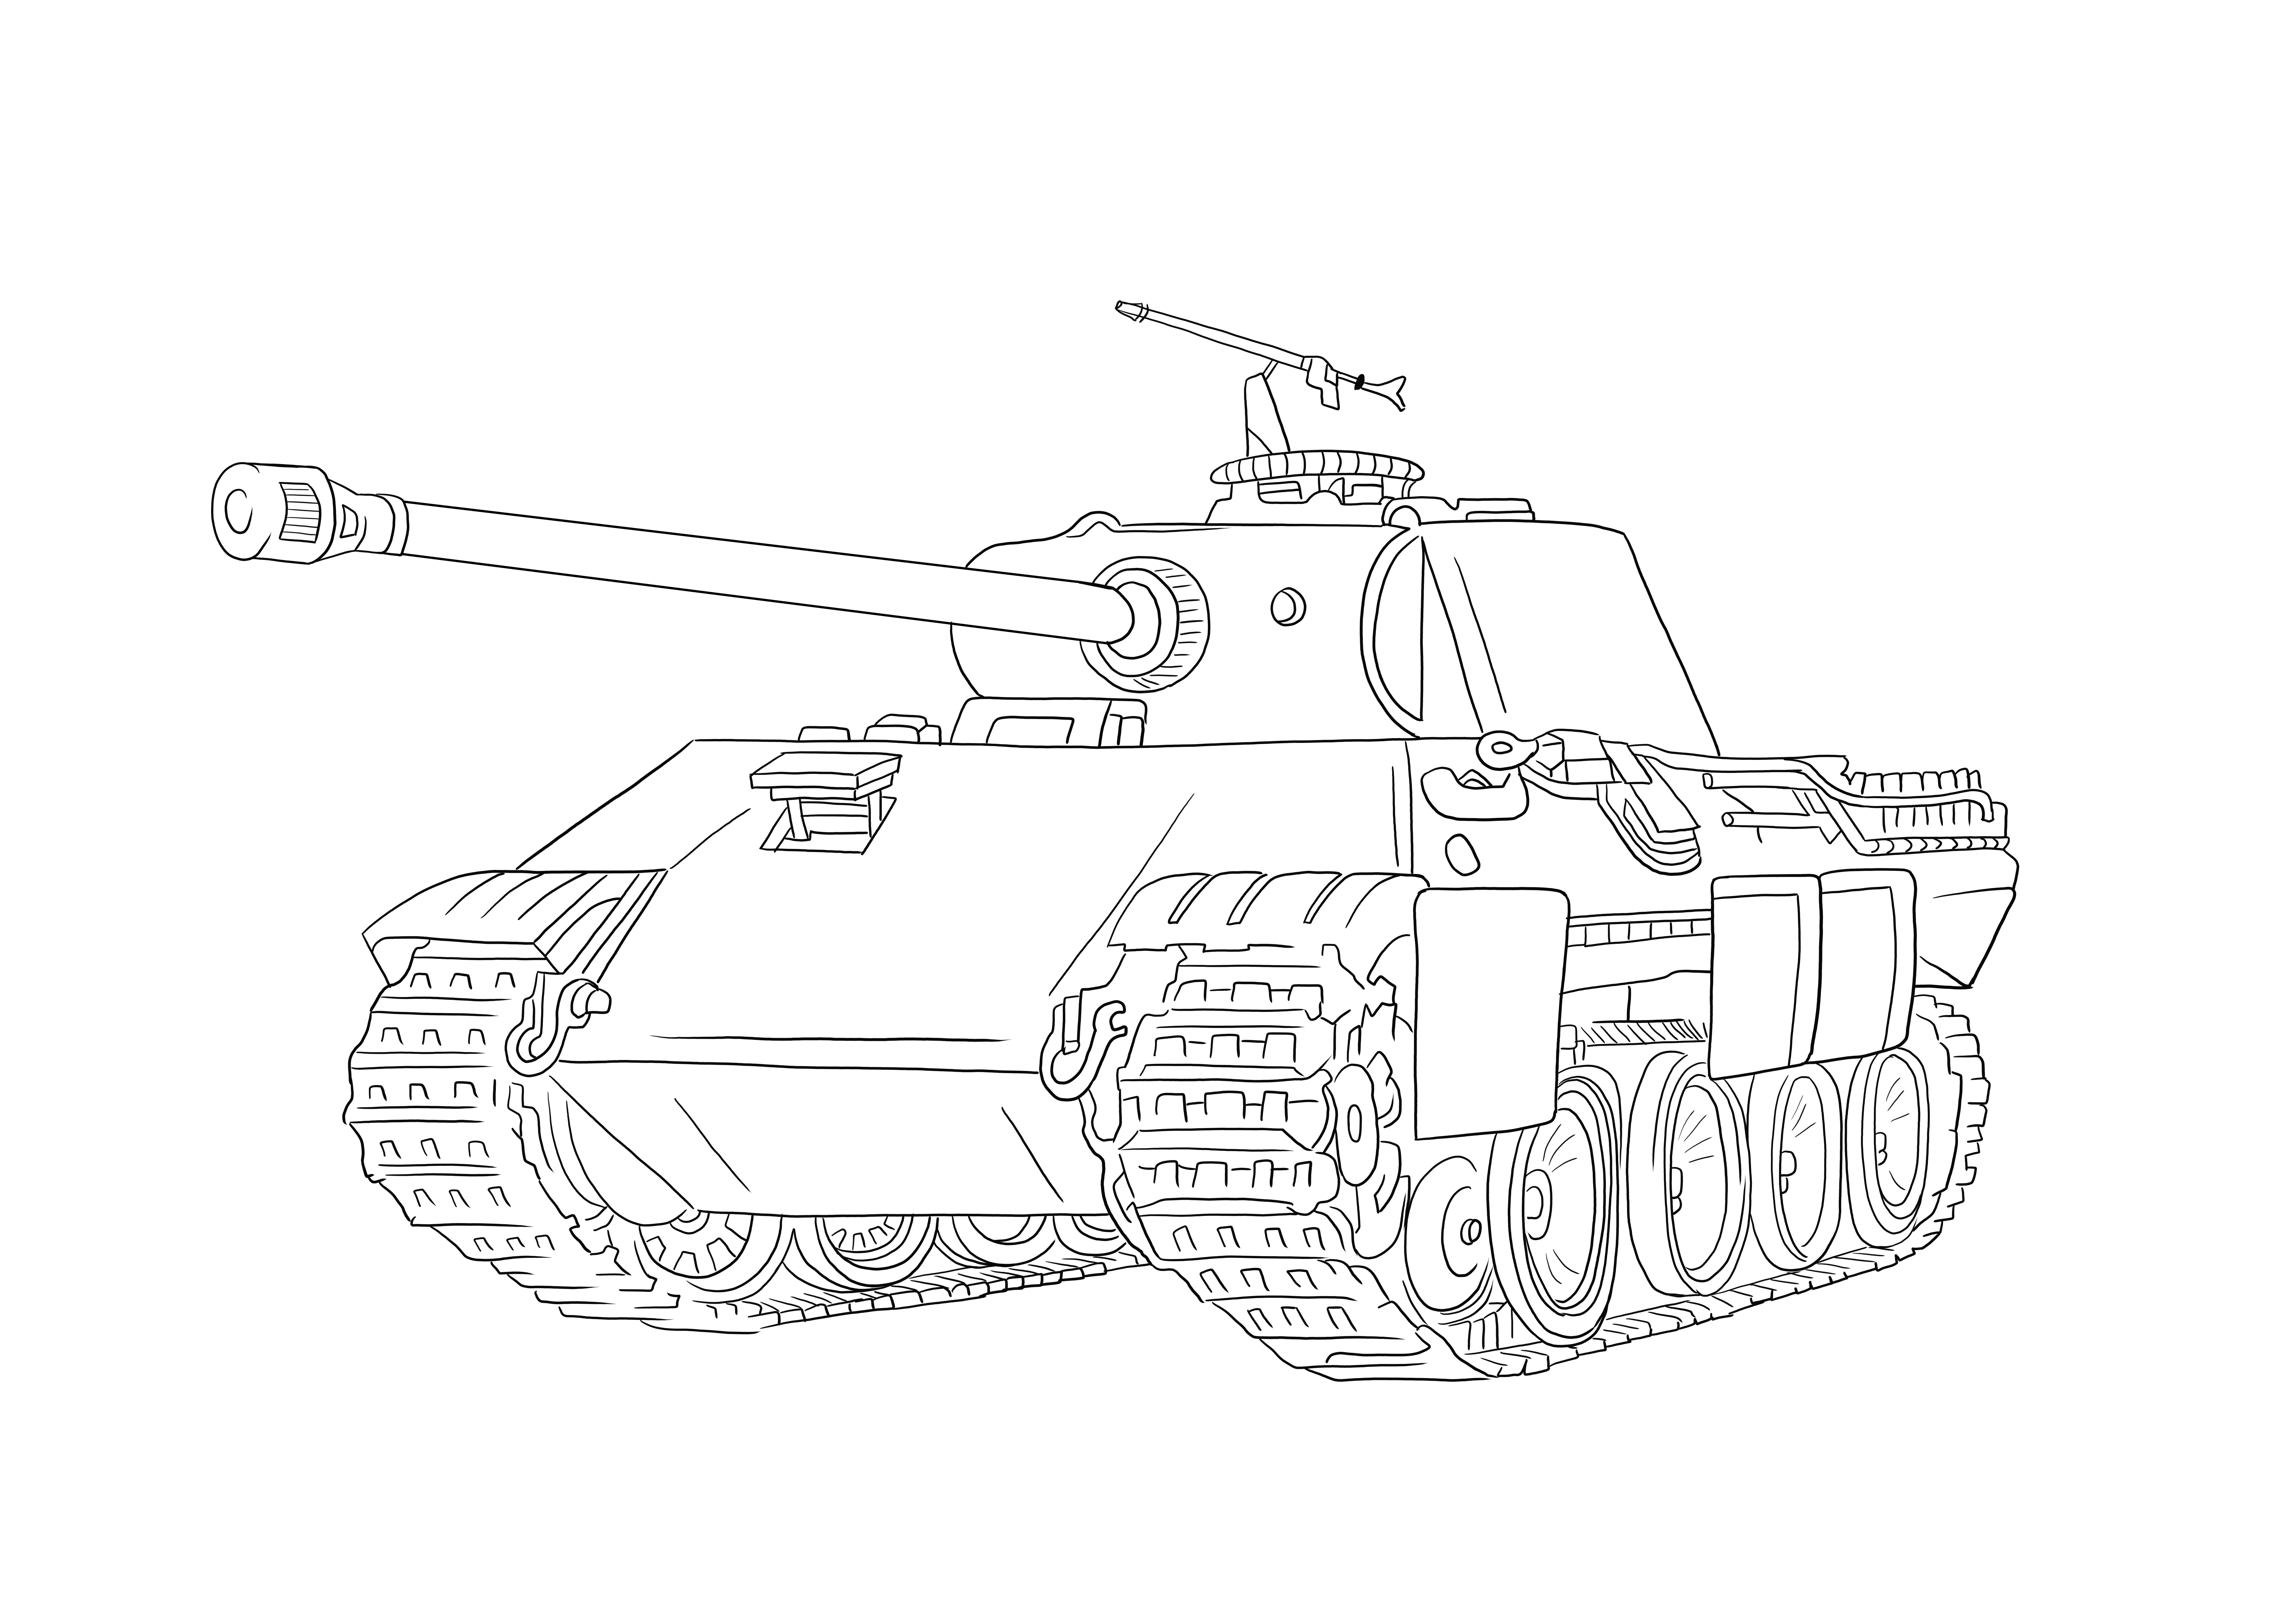 Ilmainen tulostettava Panther Tank lapsille helppoa ja yksinkertaista väritystä varten